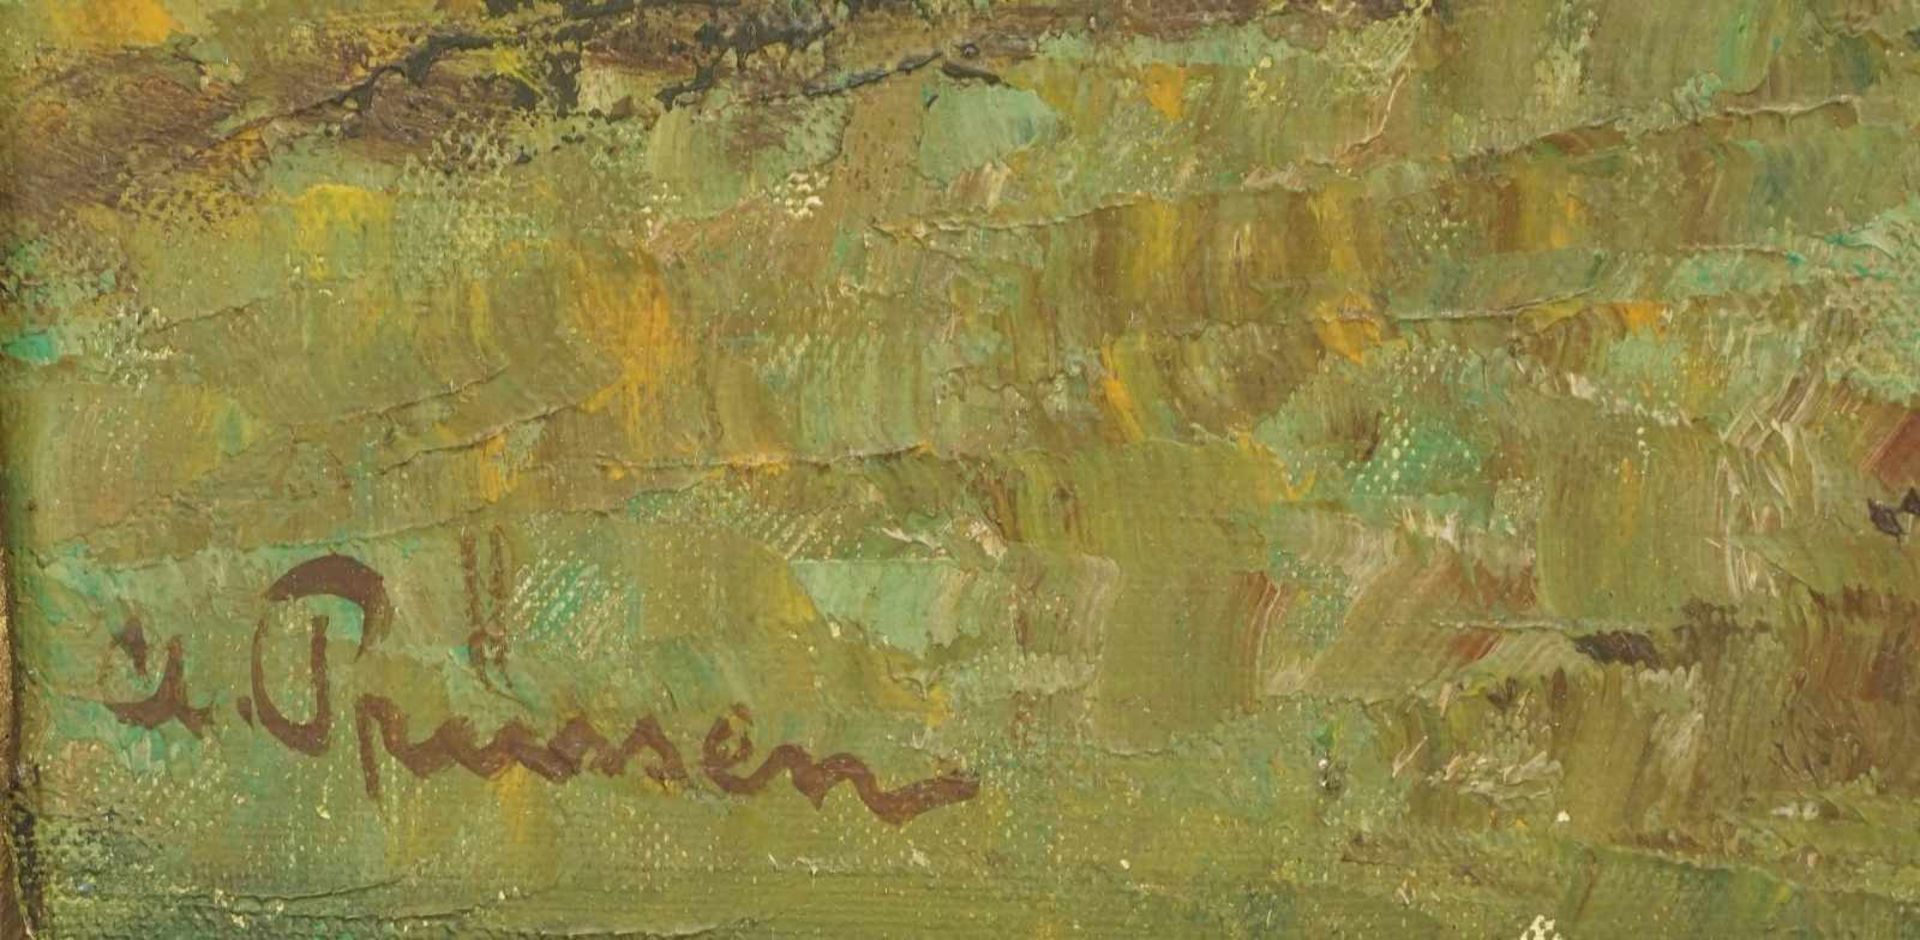 Clemens Prüssen, "Felsige Landschaft mit Ziegenhirtin" - Bild 4 aus 4